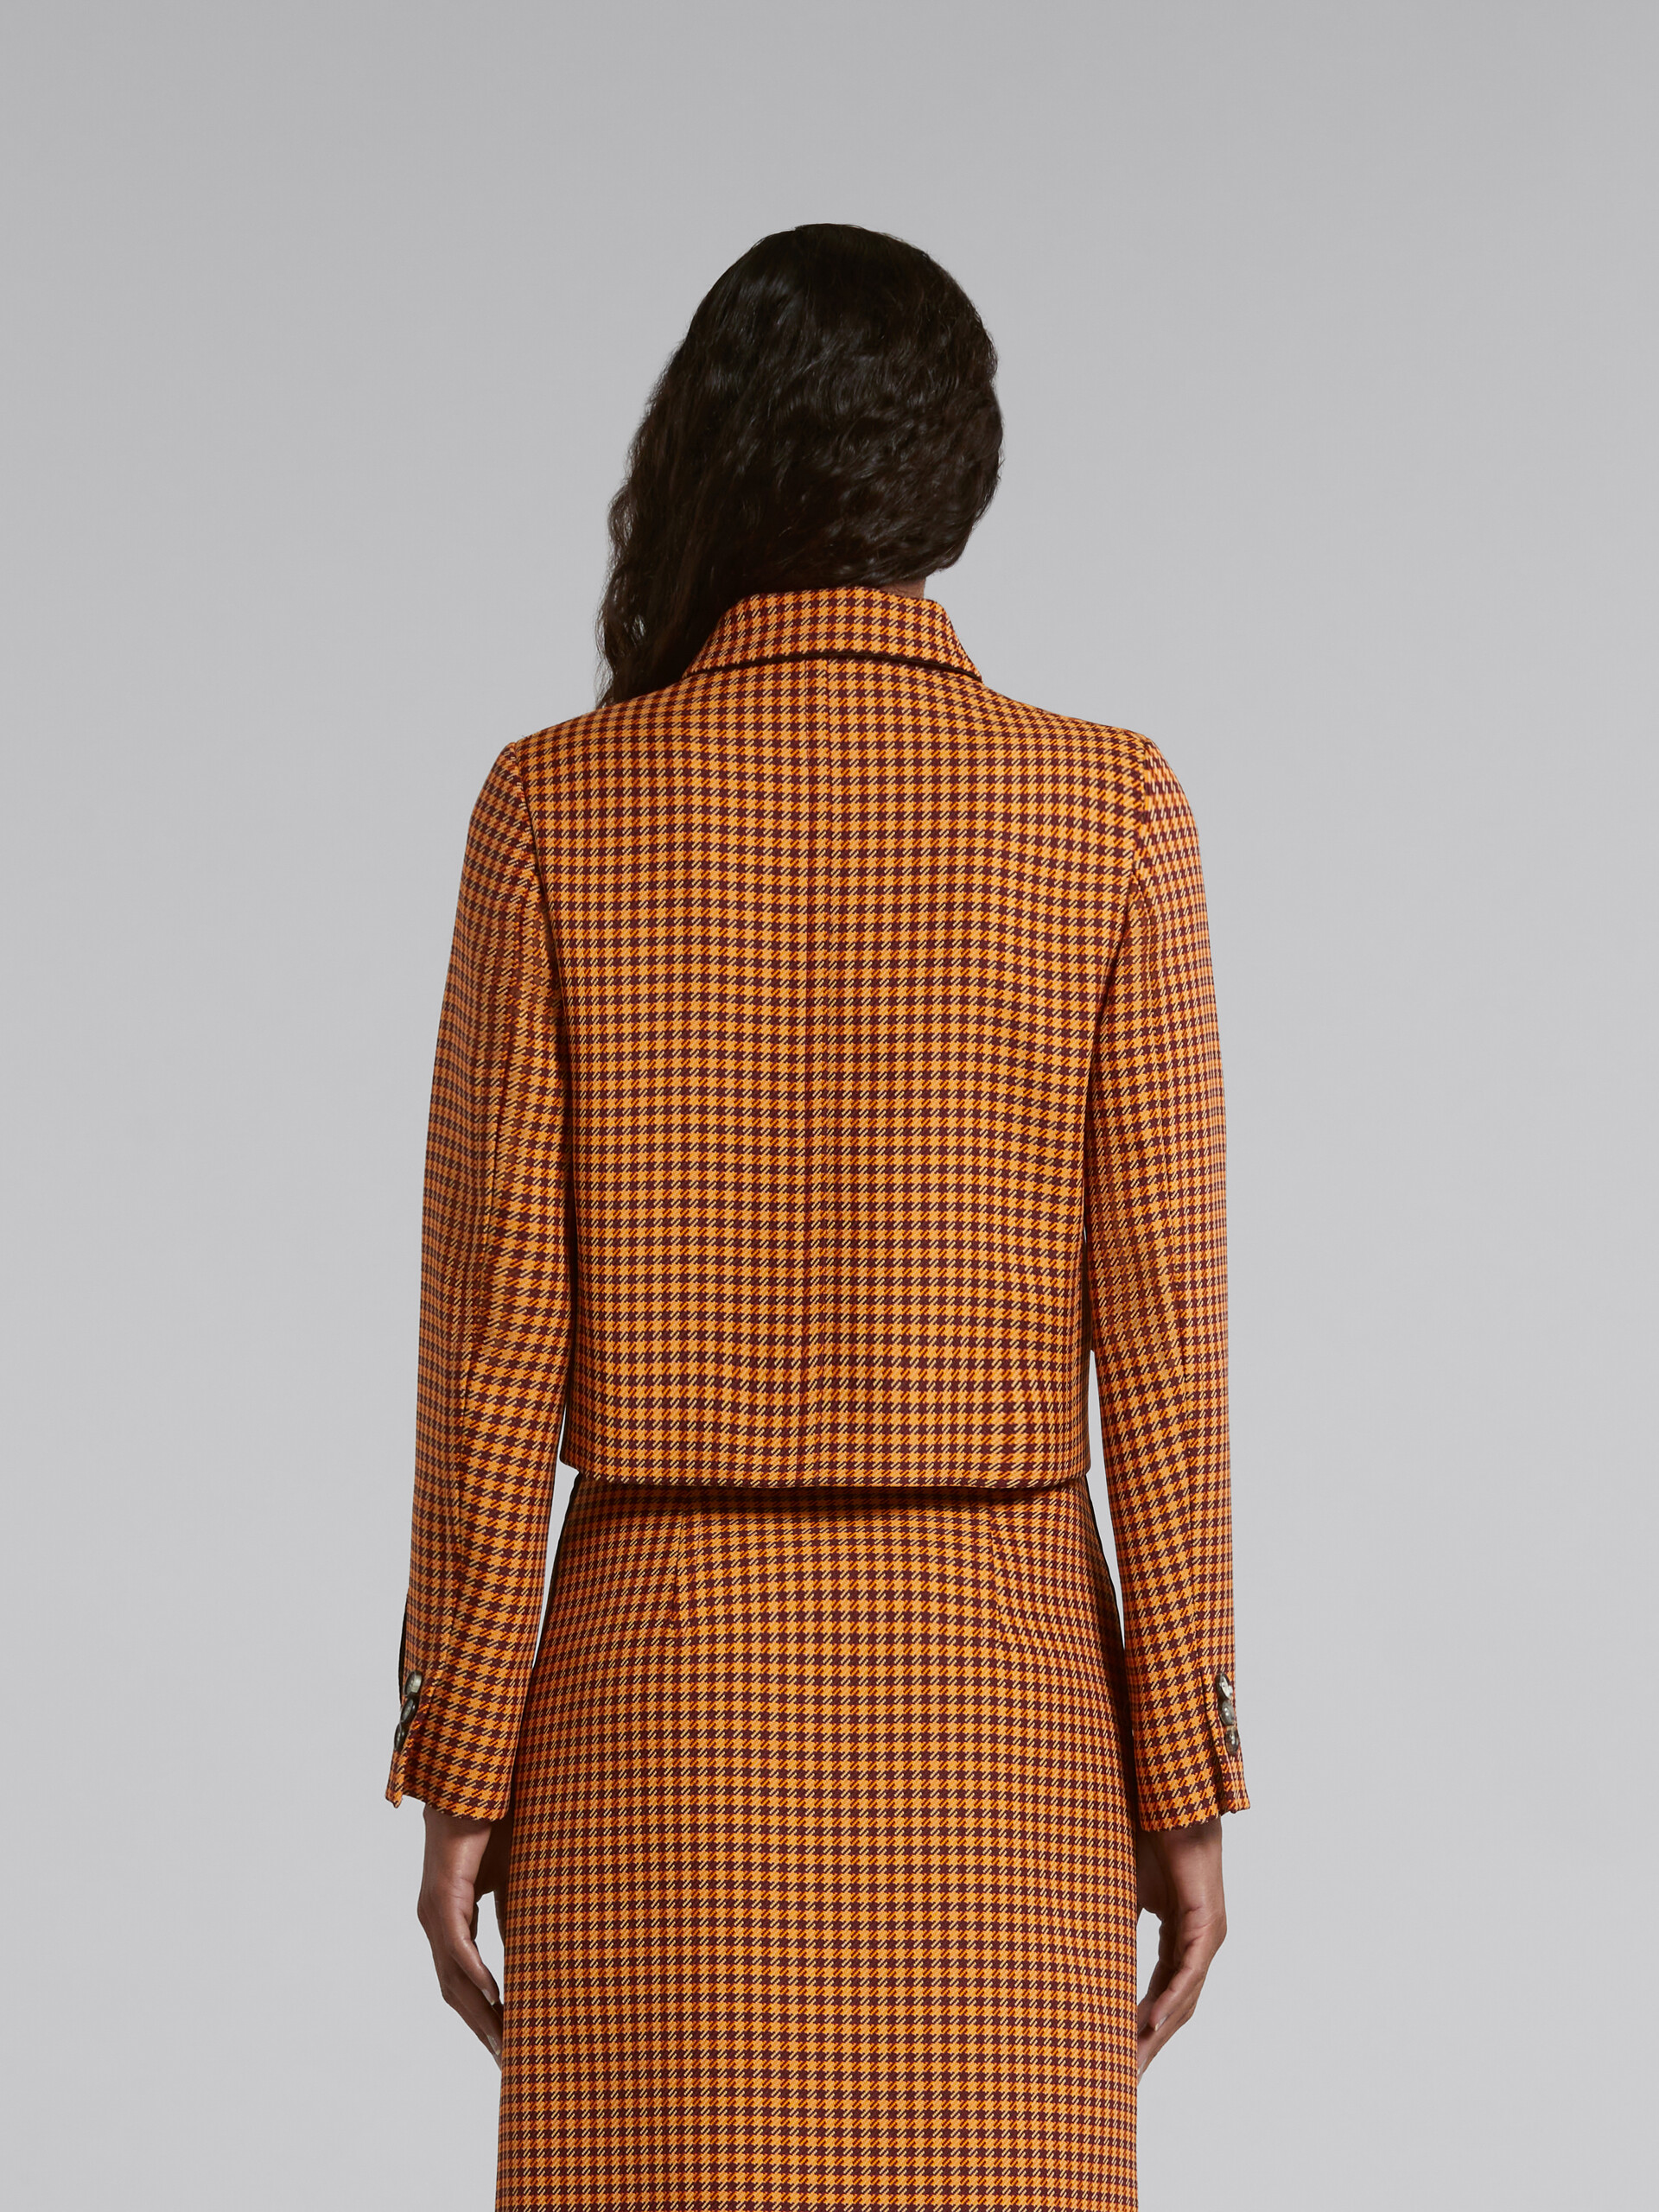 Veste courte à carreaux orange et bordeaux - Manteaux - Image 3